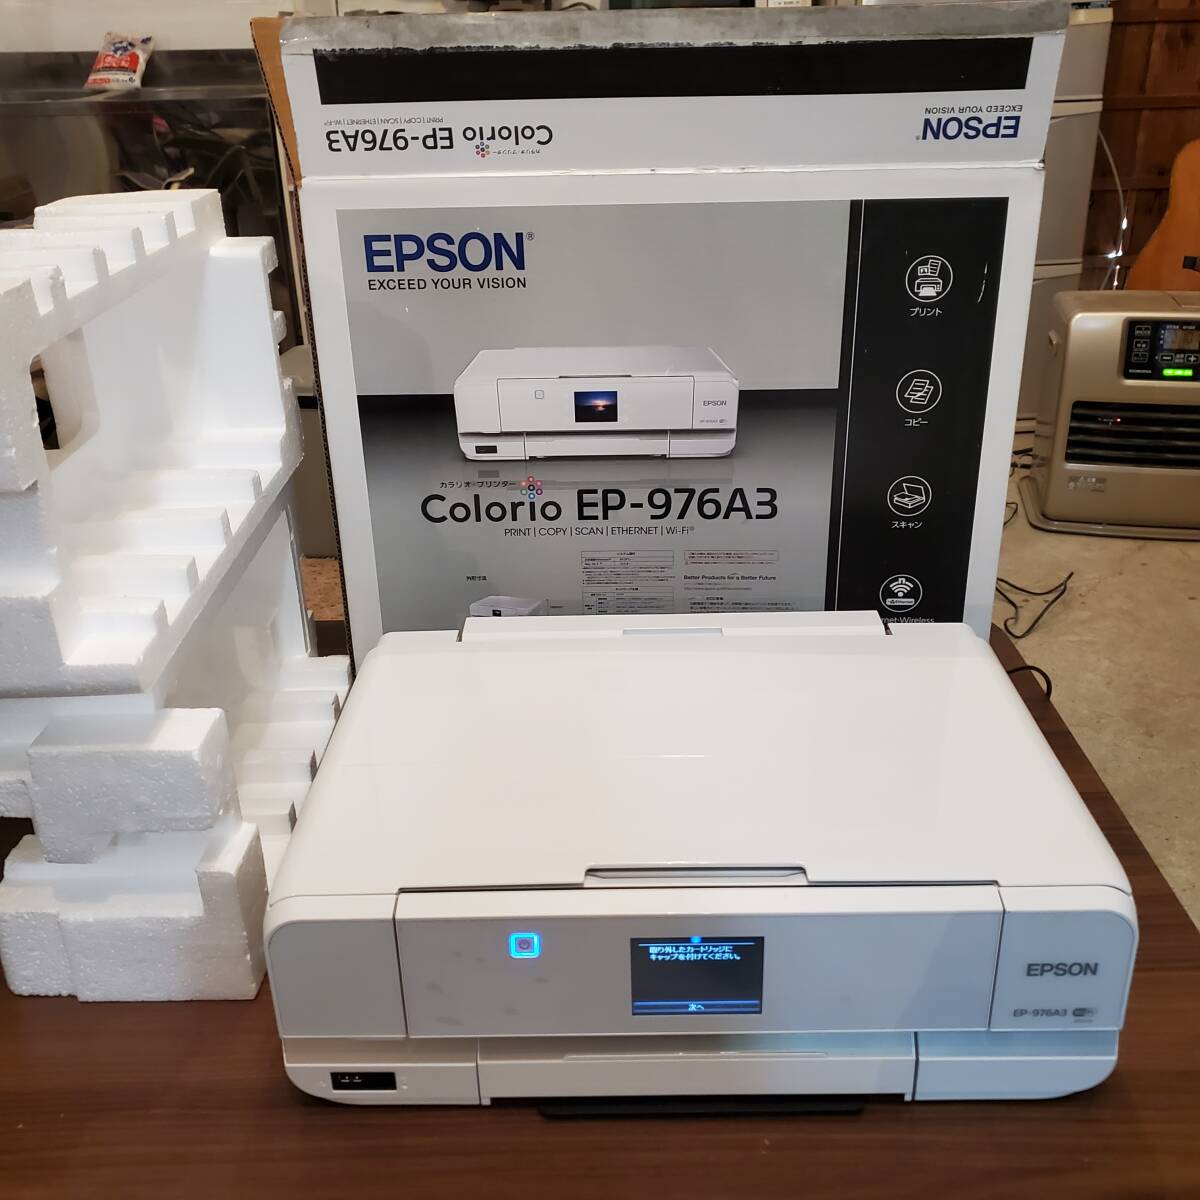 EPSON エプソン EP-976A3 カラリオ・プリンター インクジェット複合機 通電確認のみOK 化粧箱付き 説明書なし_画像1